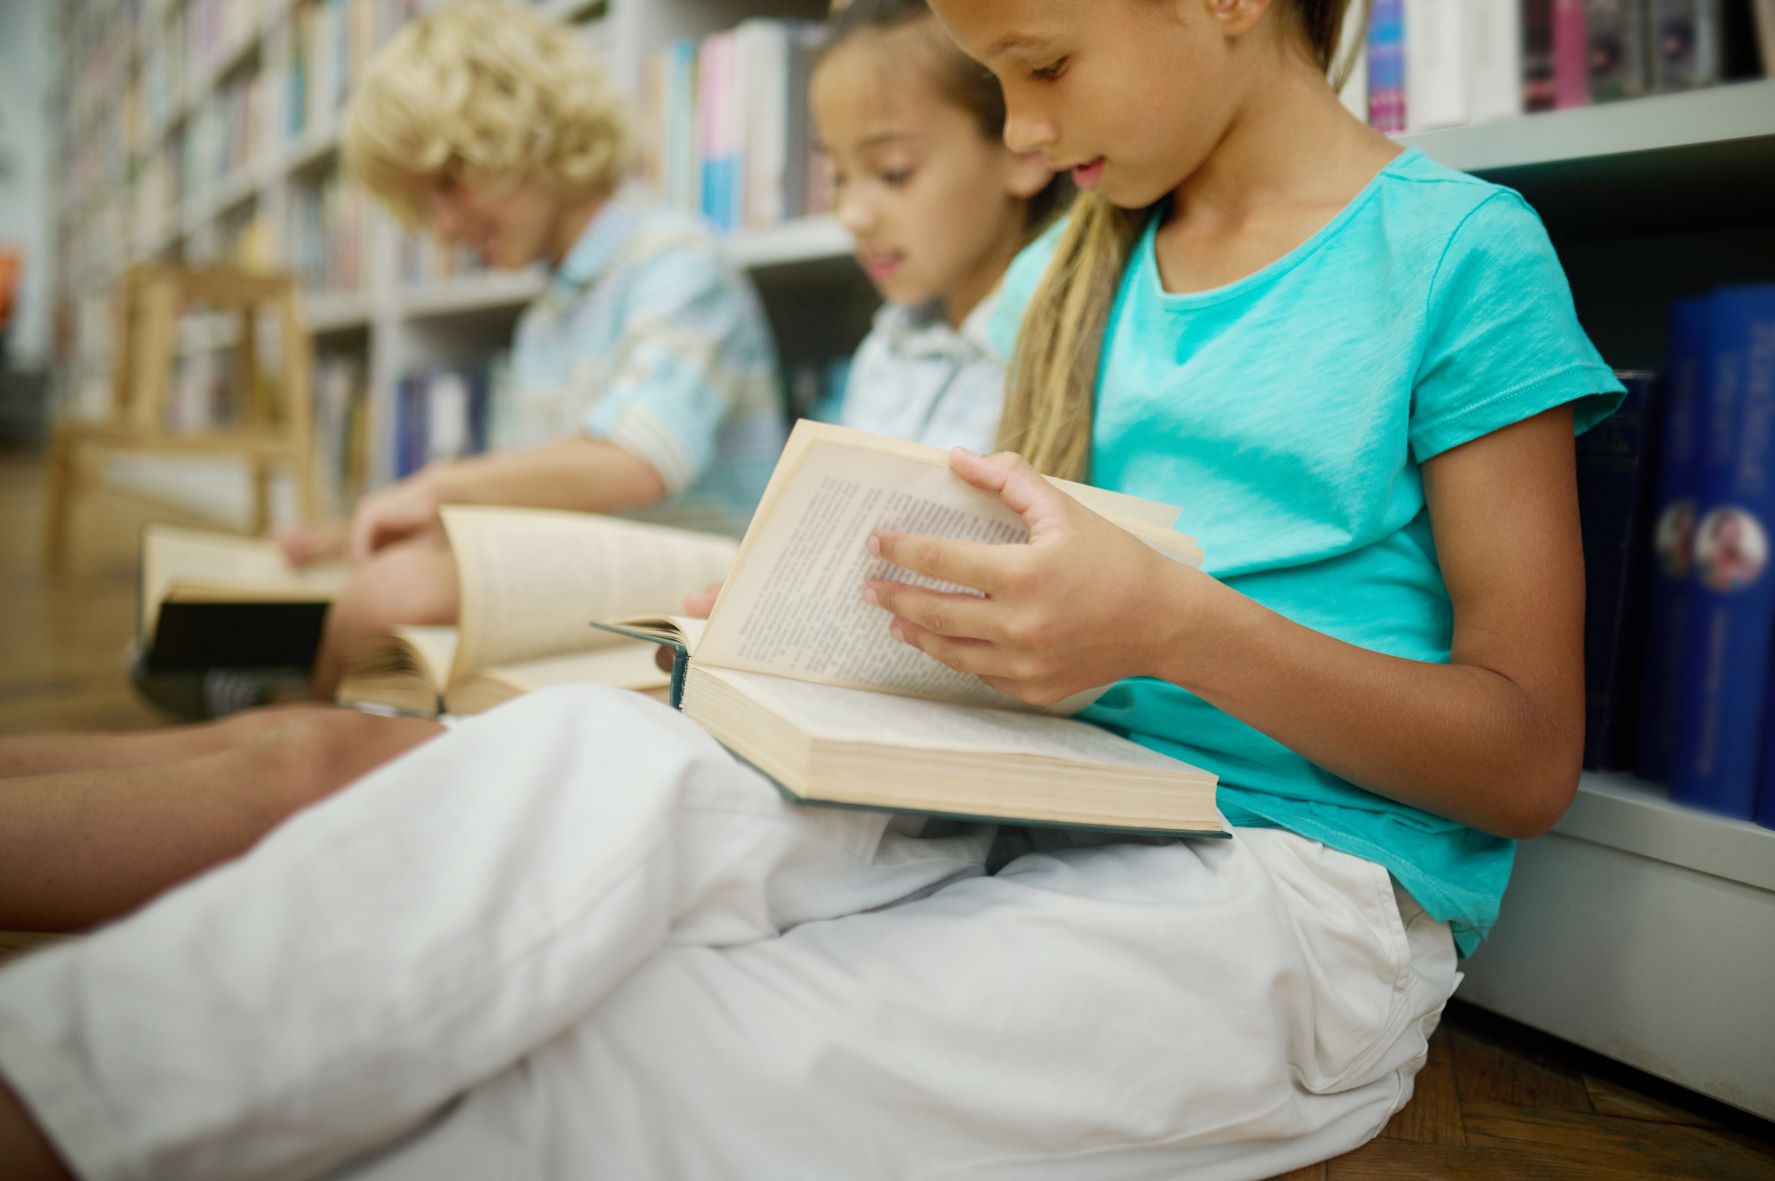 Não tenha dúvida: o estímulo à leitura é fundamental no processo de alfabetização das crianças. Além das atividades em sala de aula, é essencial que em casa essa prática seja parte das rotinas diárias para despertar a curiosidade e o interesse de meninos e meninas.